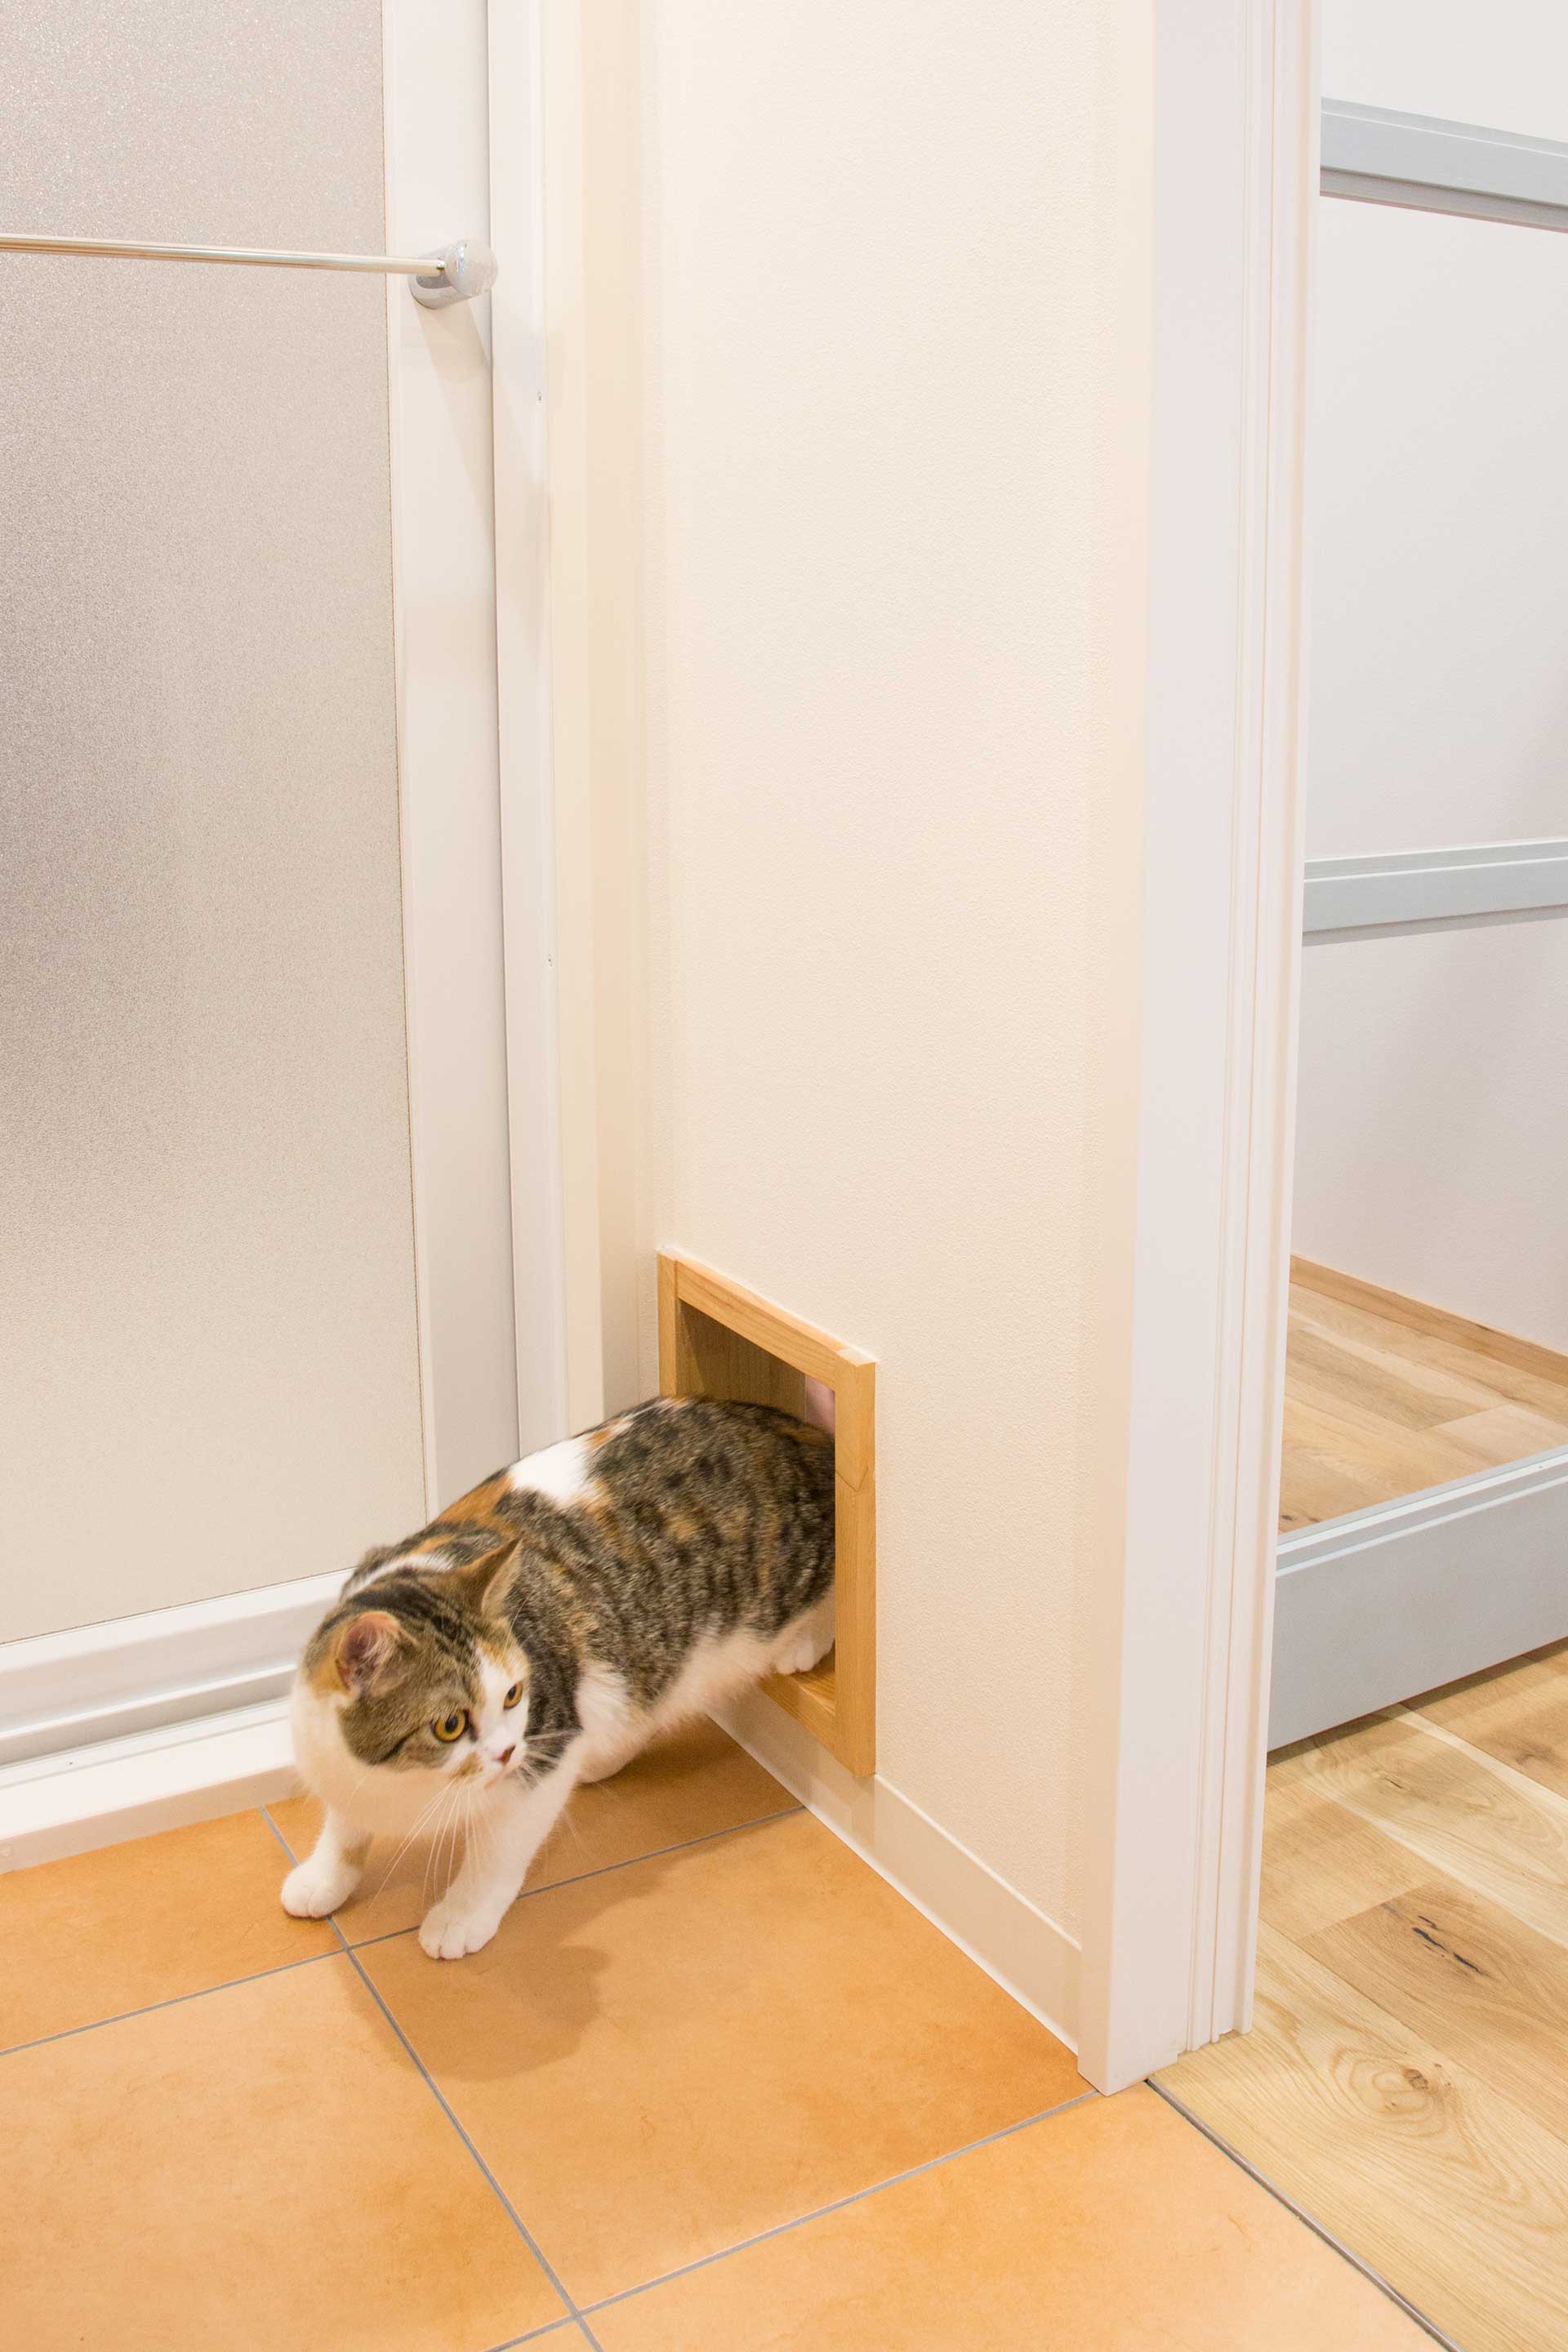 専用の入り口があれば、空調の問題なく猫が自由に行き来できる。